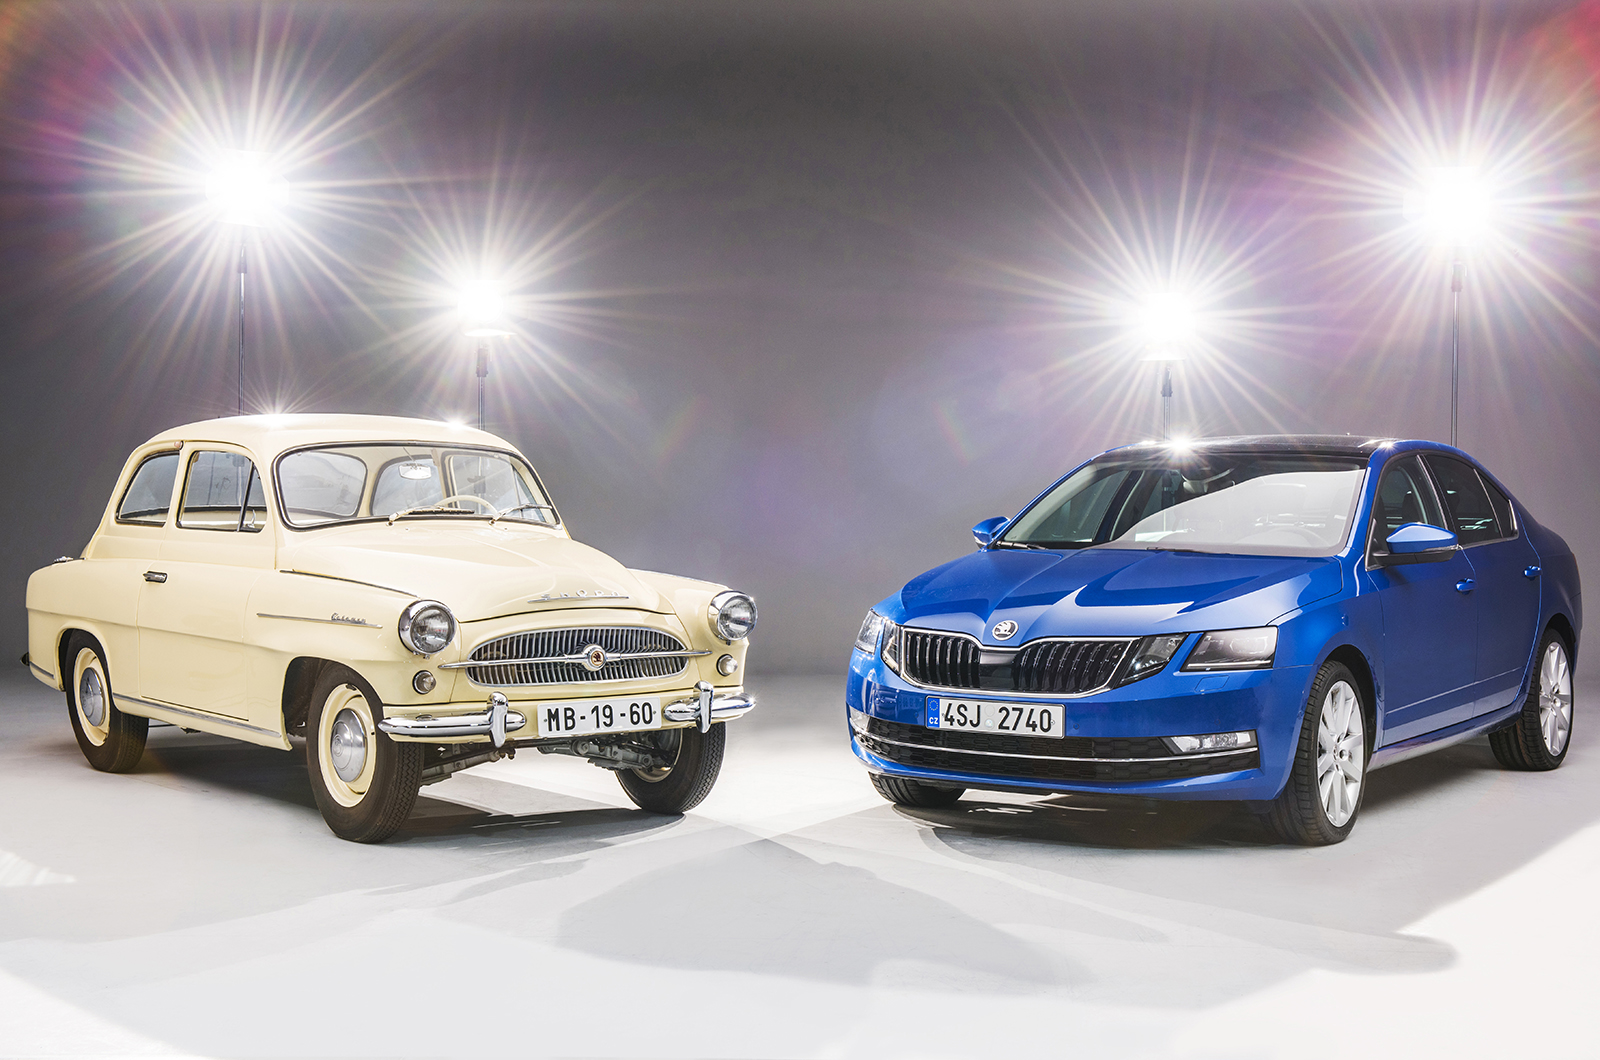 Classic & Sports Car – Happy 60th birthday to the Škoda Octavia!